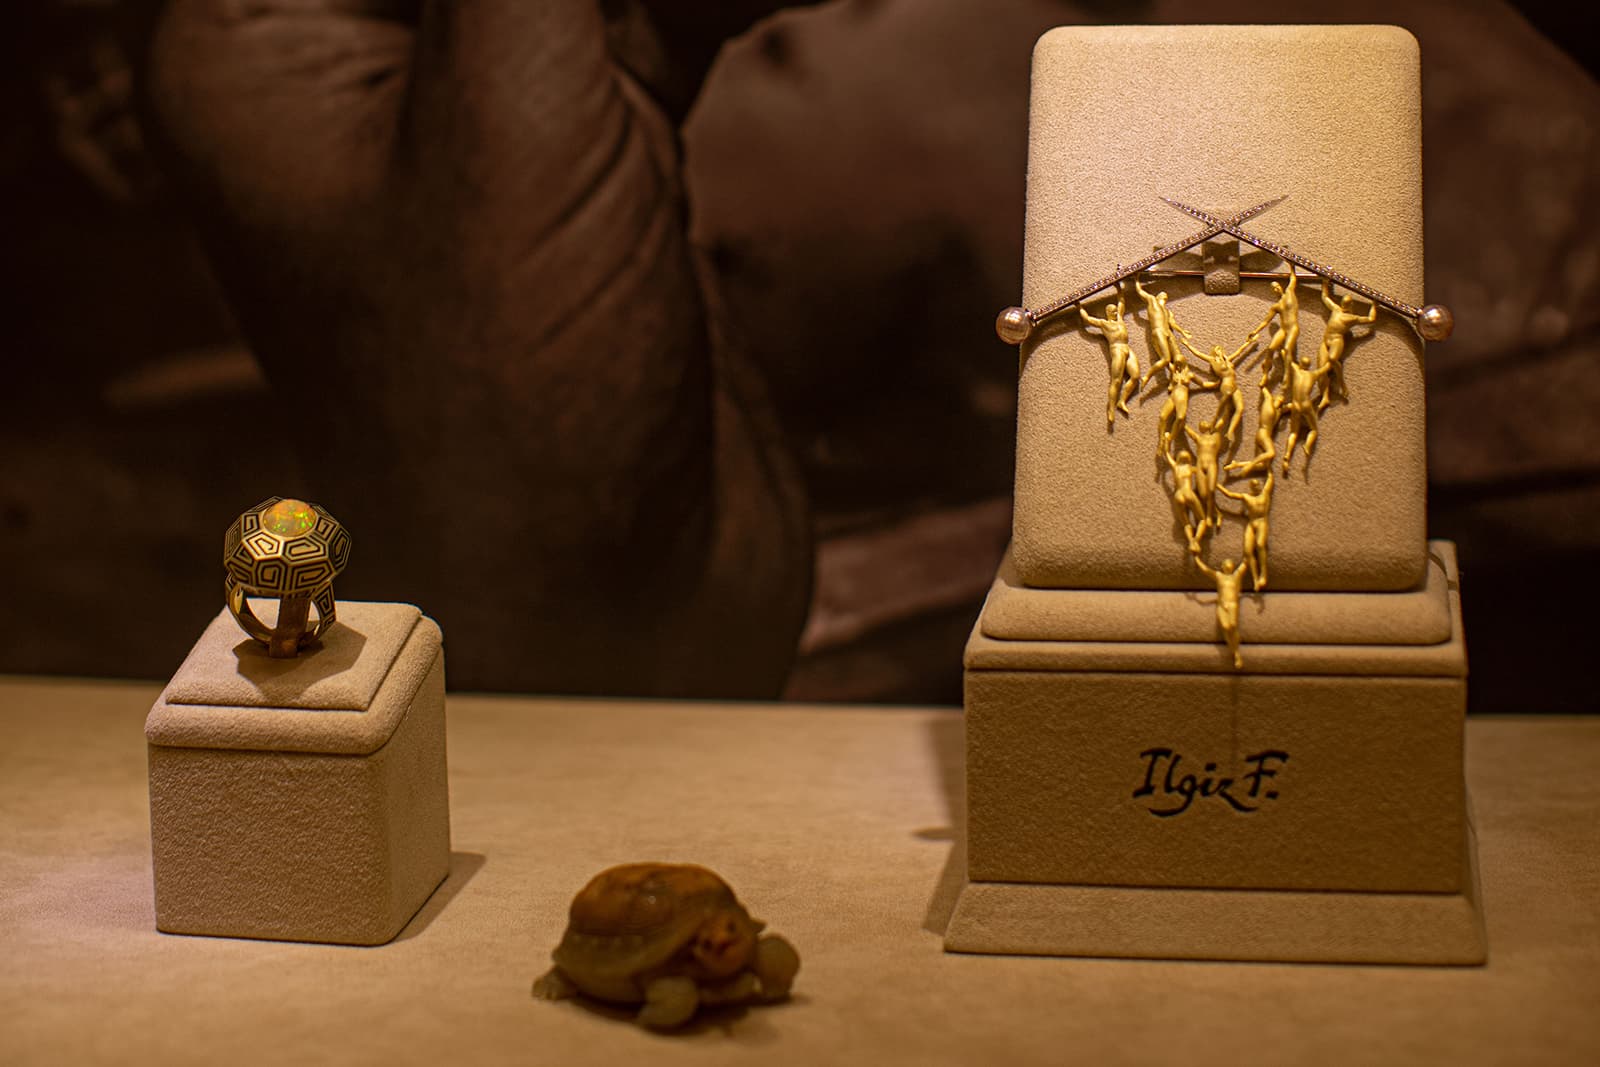 Брошь Ilgiz F. «Бытие» из коллекции Portafortuna с жемчугом 13,4 карата и бриллиантами; кольцо «Грани» с опалом 4,23 карта; «Черепаха» из резного агата